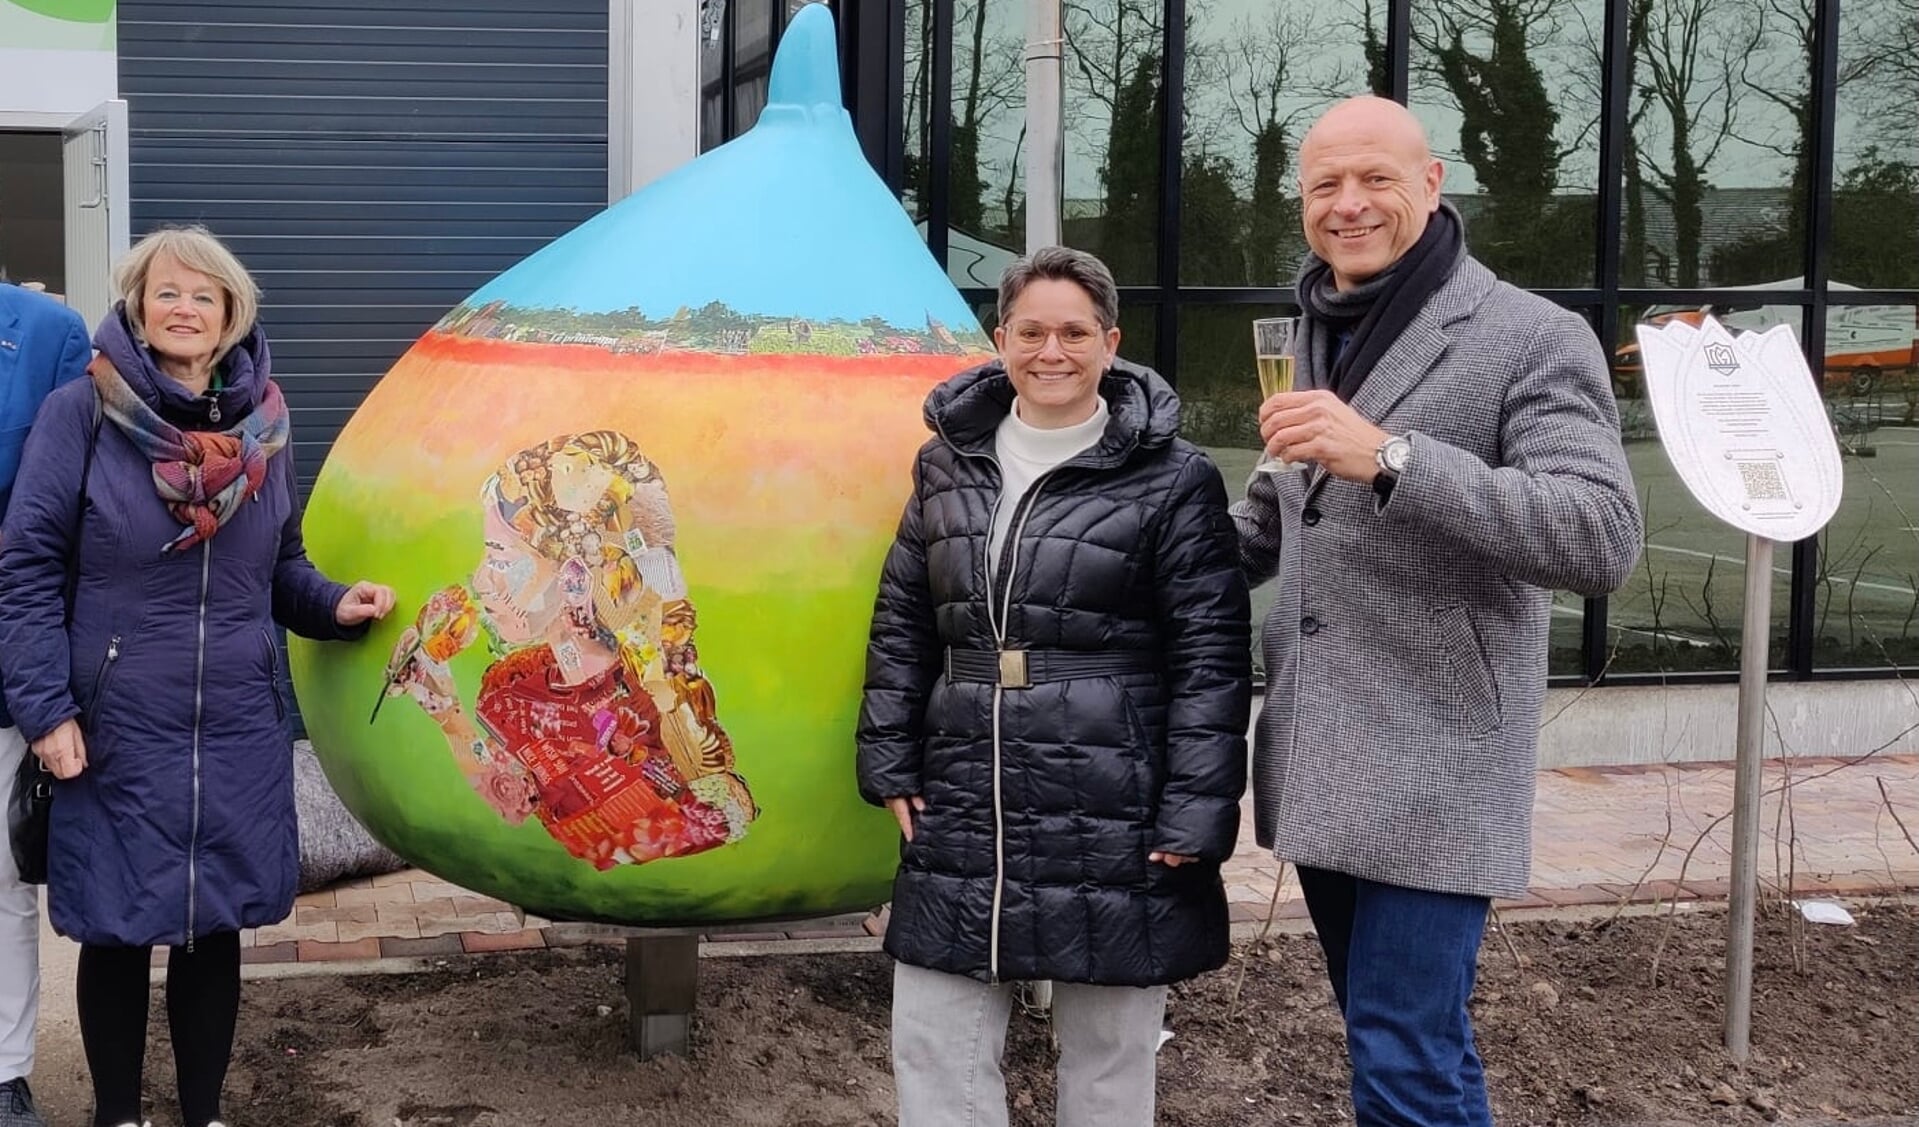 Burgemeester Lies Spruit , Lisette Hogewoning (kunstenaar) en Sjaco Griffioen (eigenaar Intratuin Lisse) bij de zojuist onthulde bol 'Smile'.